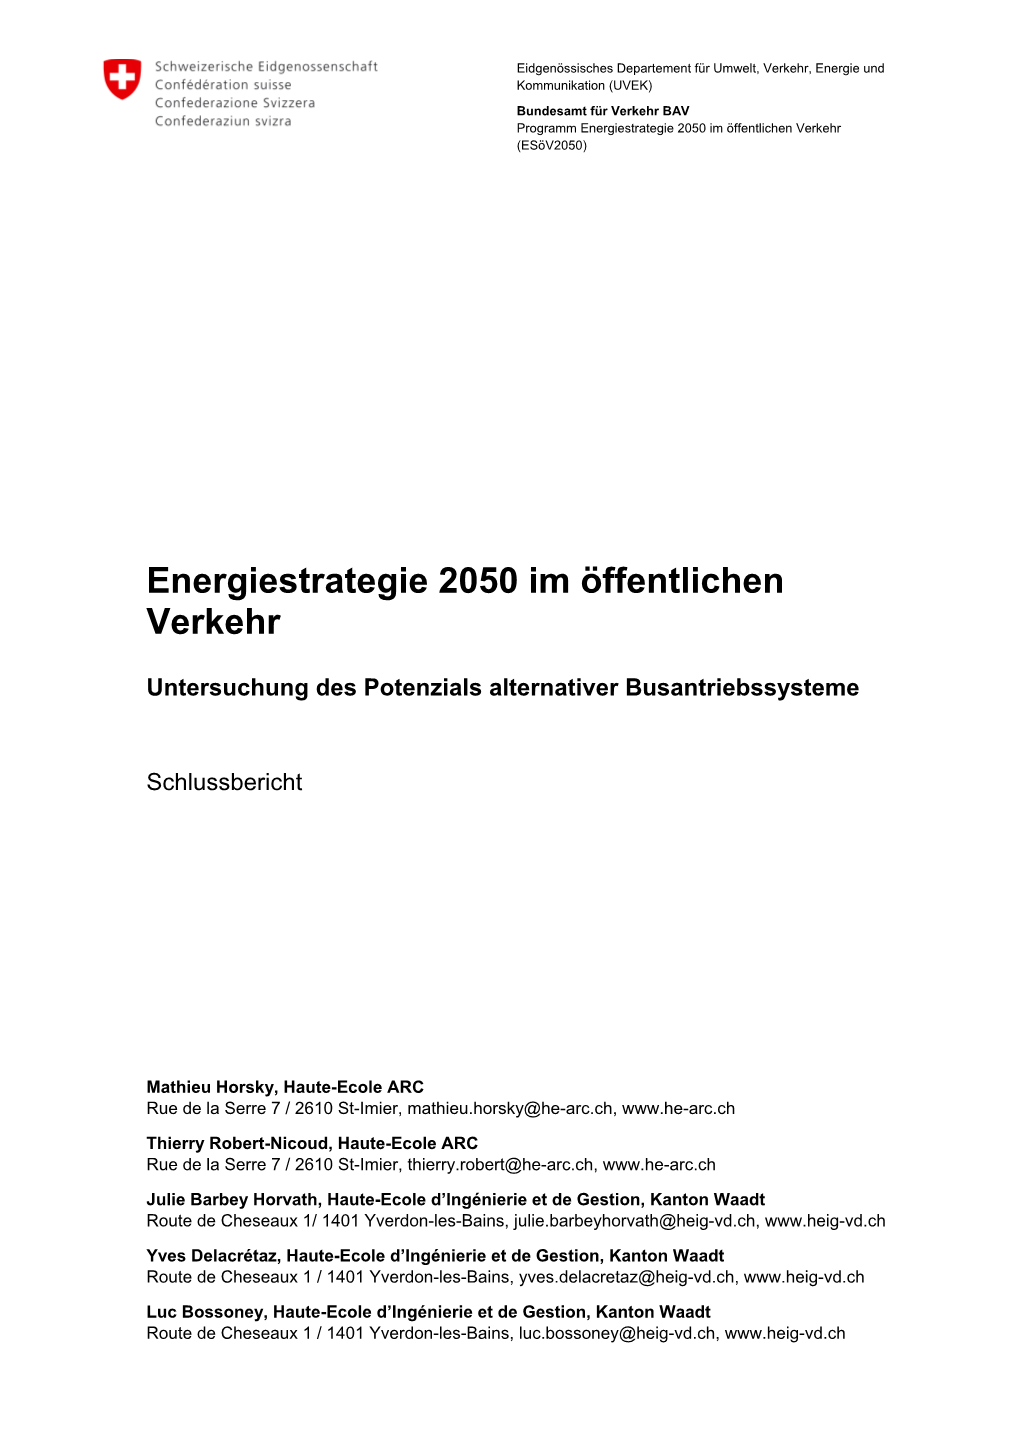 Energiestrategie 2050 Im Öffentlichen Verkehr (Esöv2050)